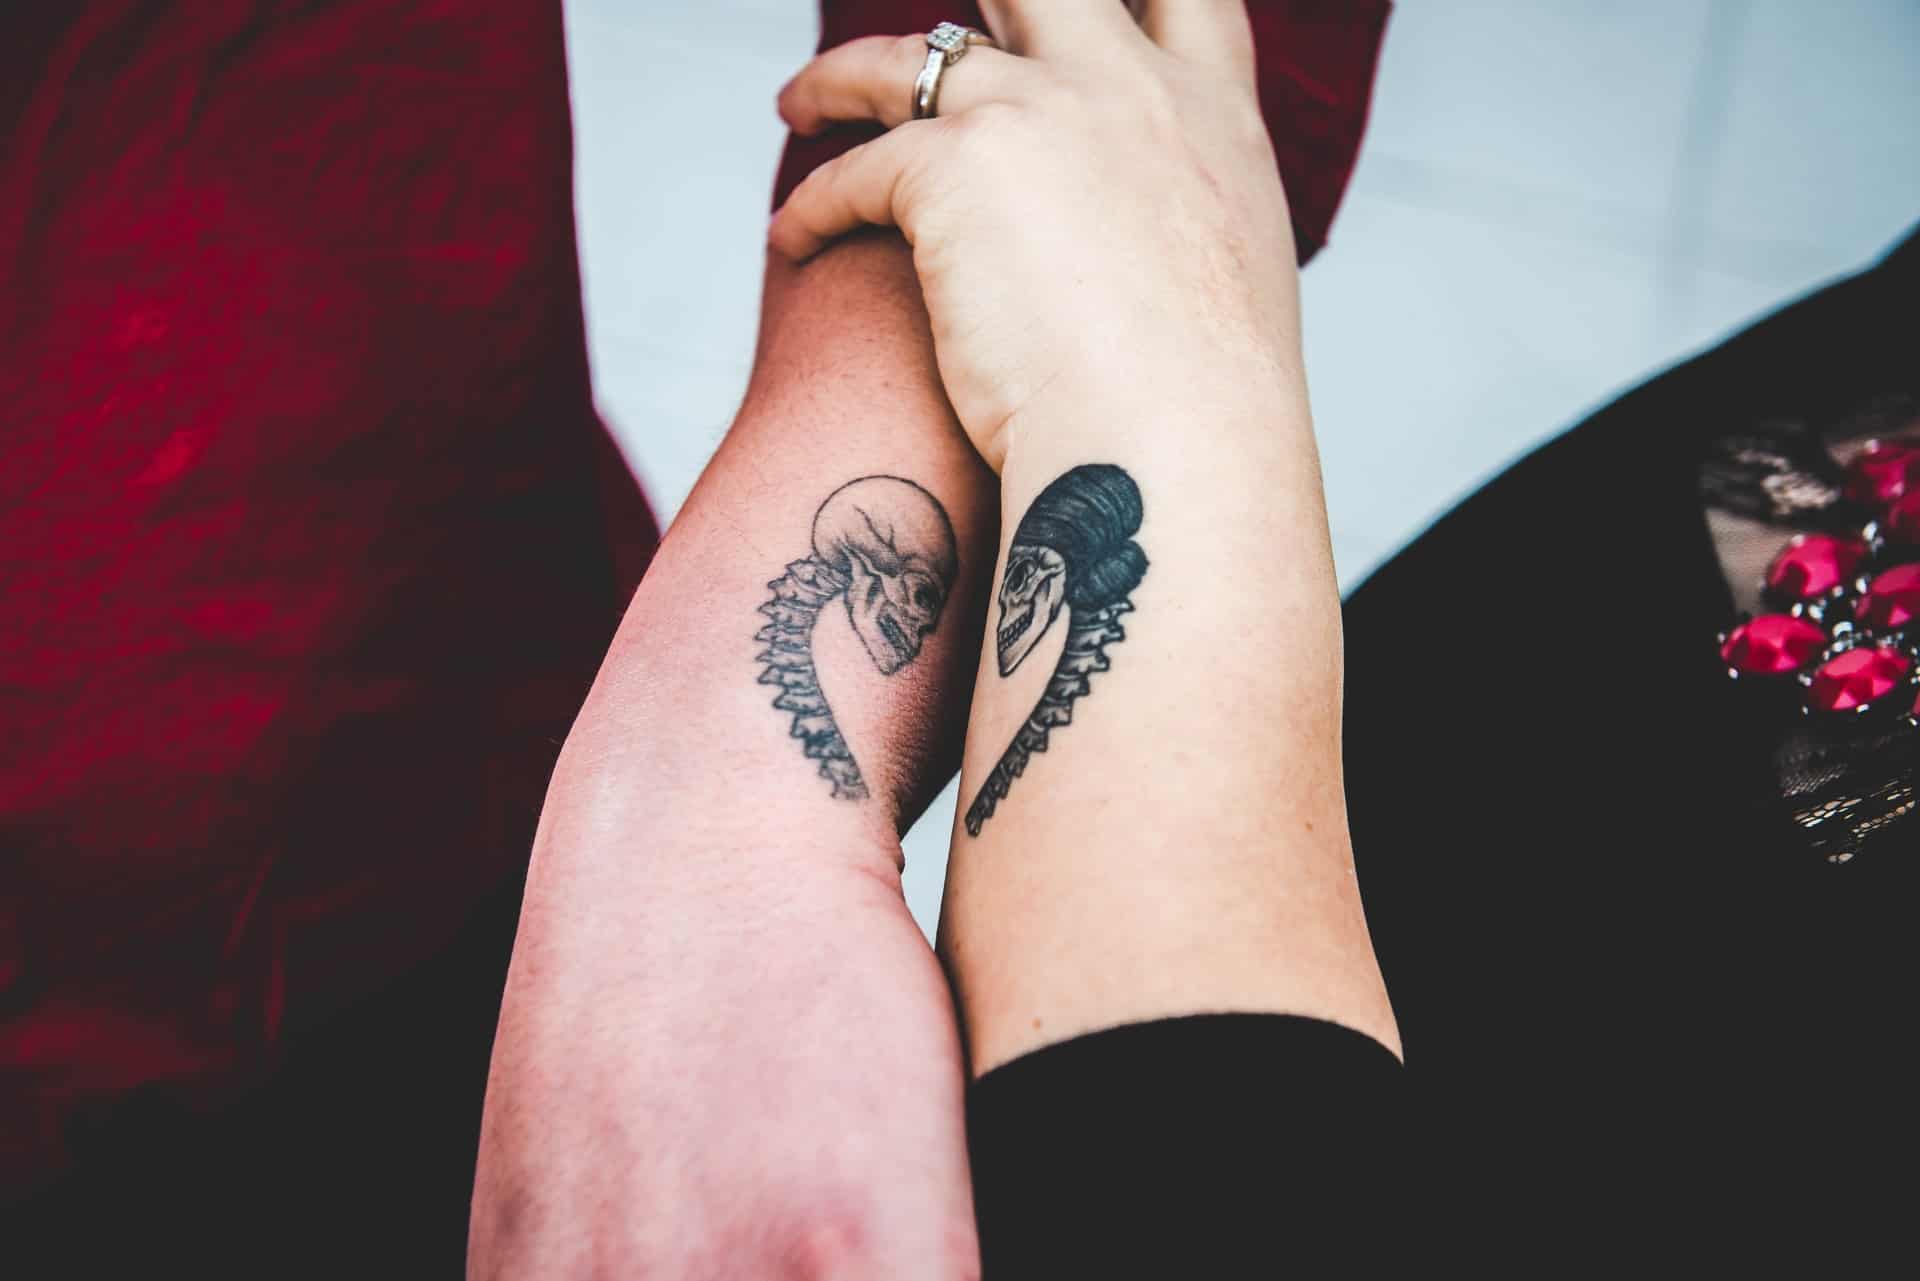 Will Dry Healing Ruin A Tattoo? - InkedMind